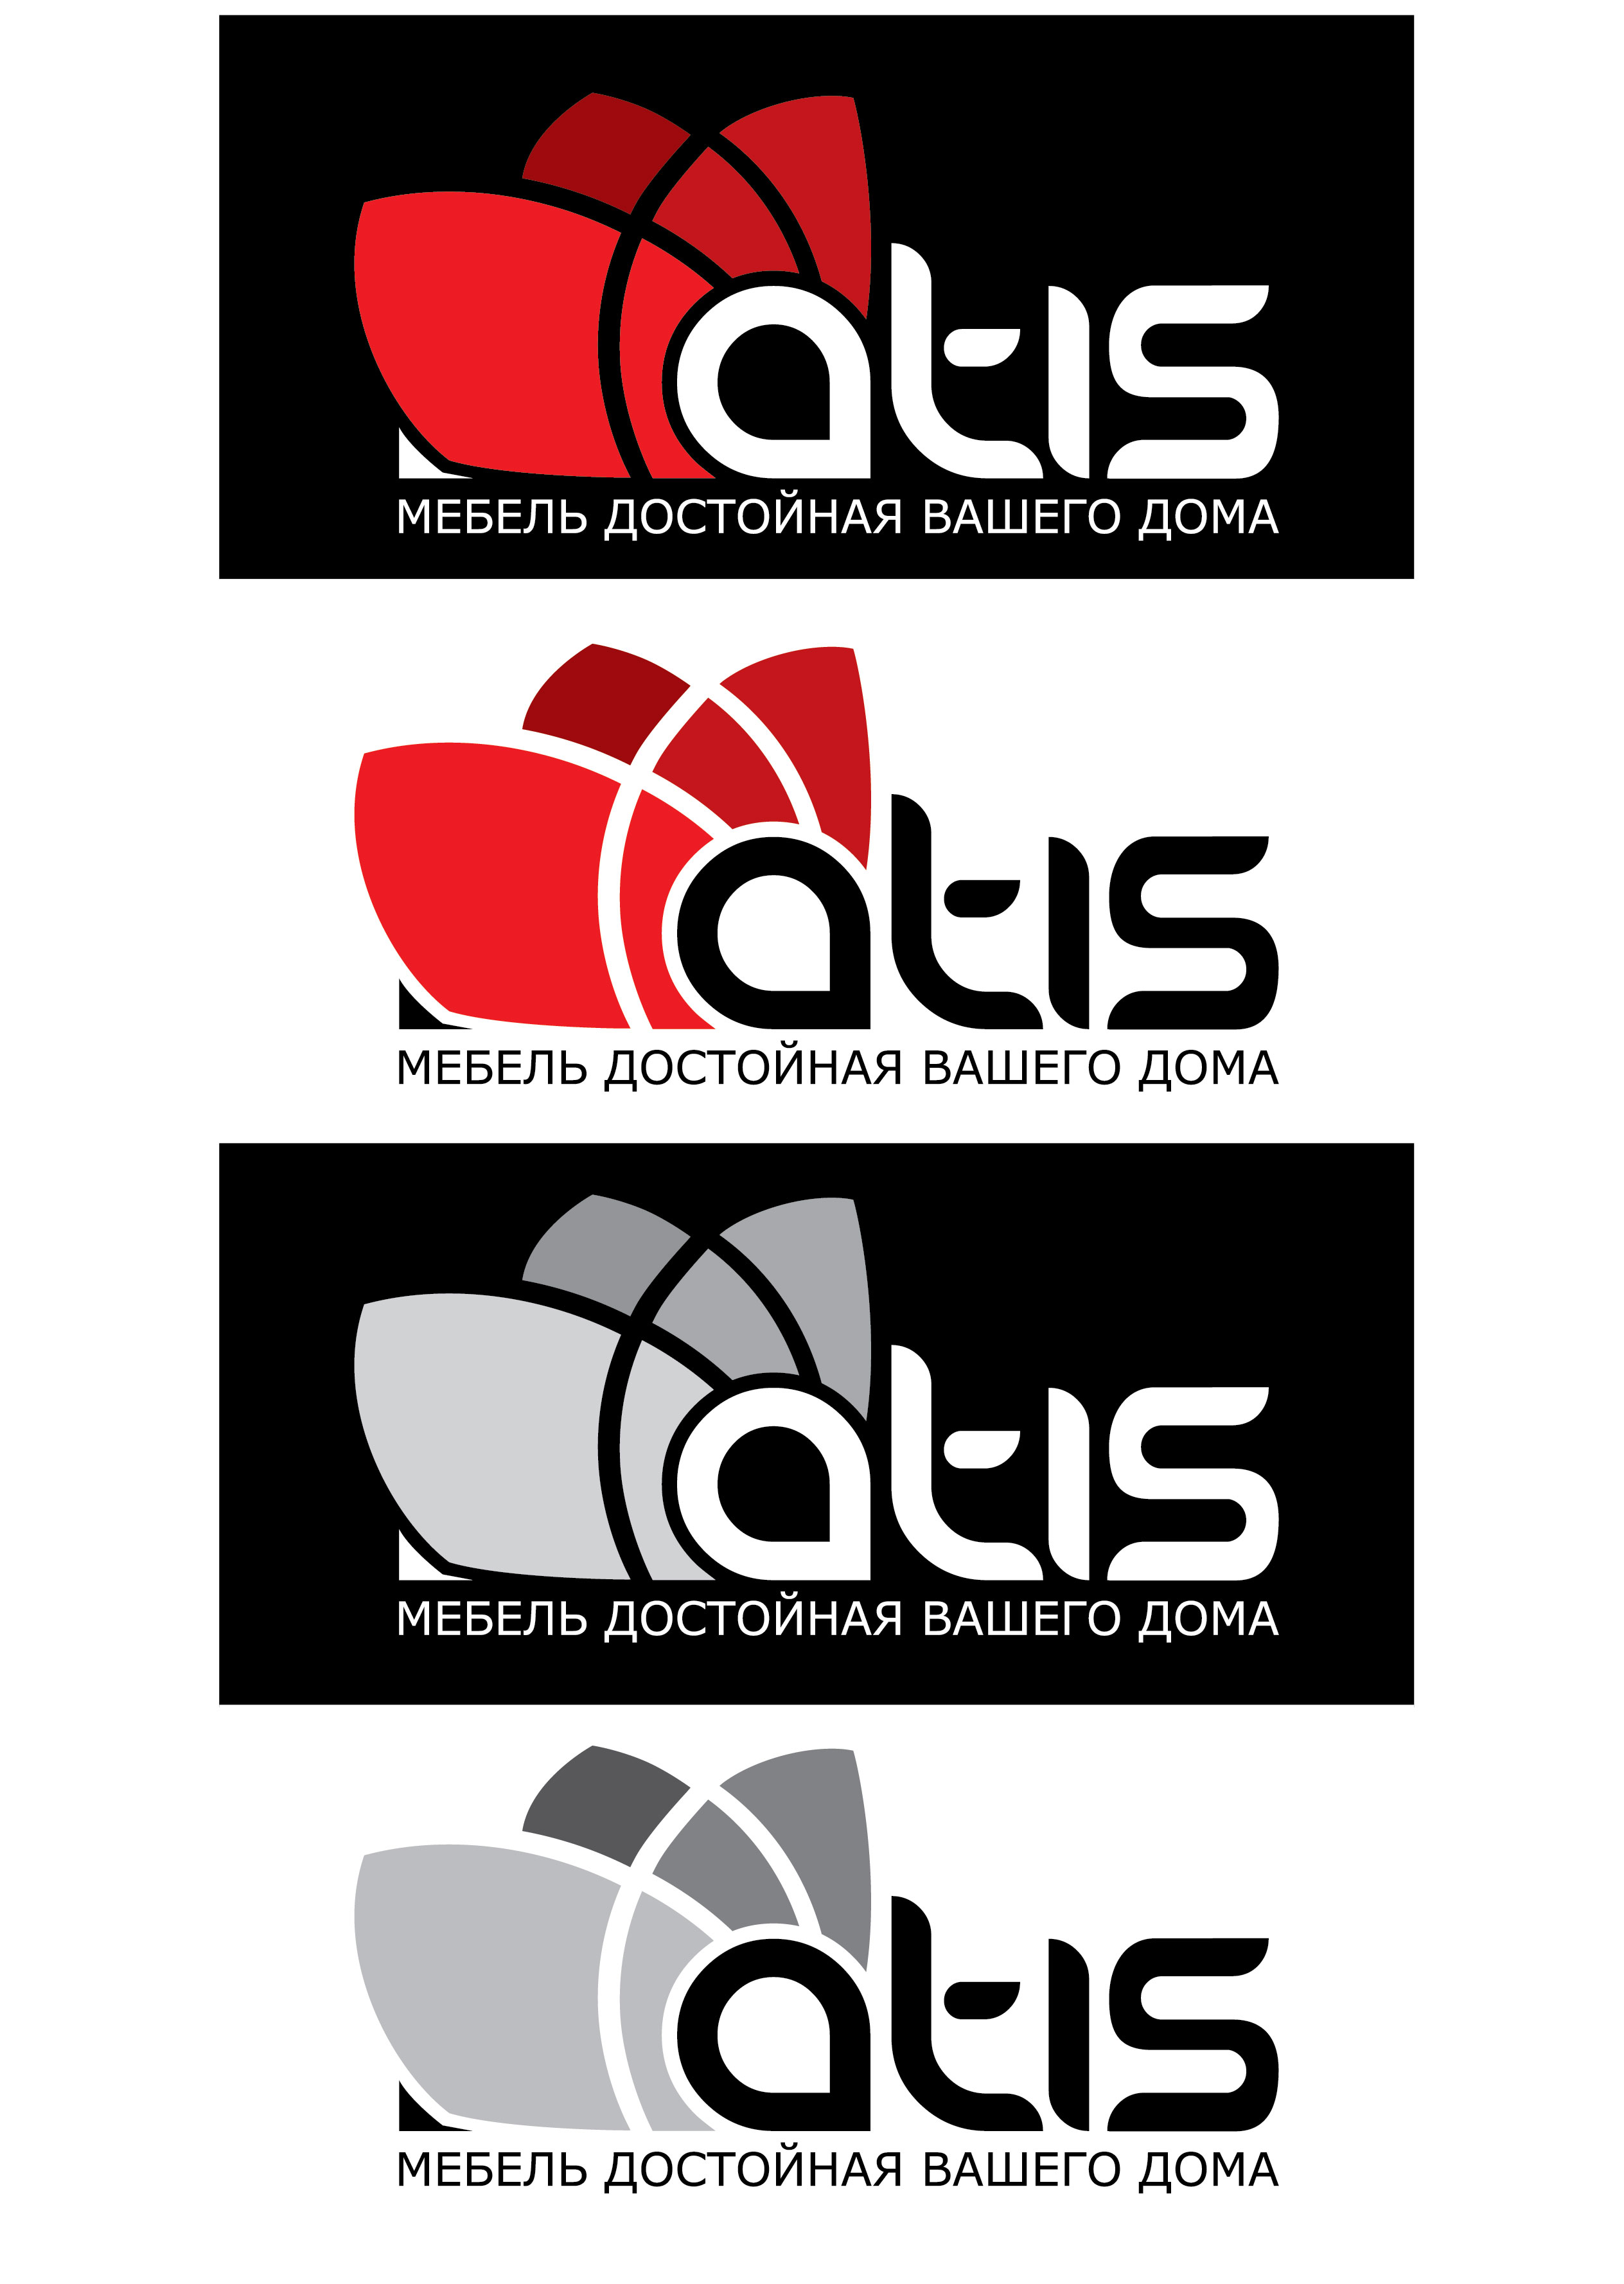 логотип http://marinad.com.ua